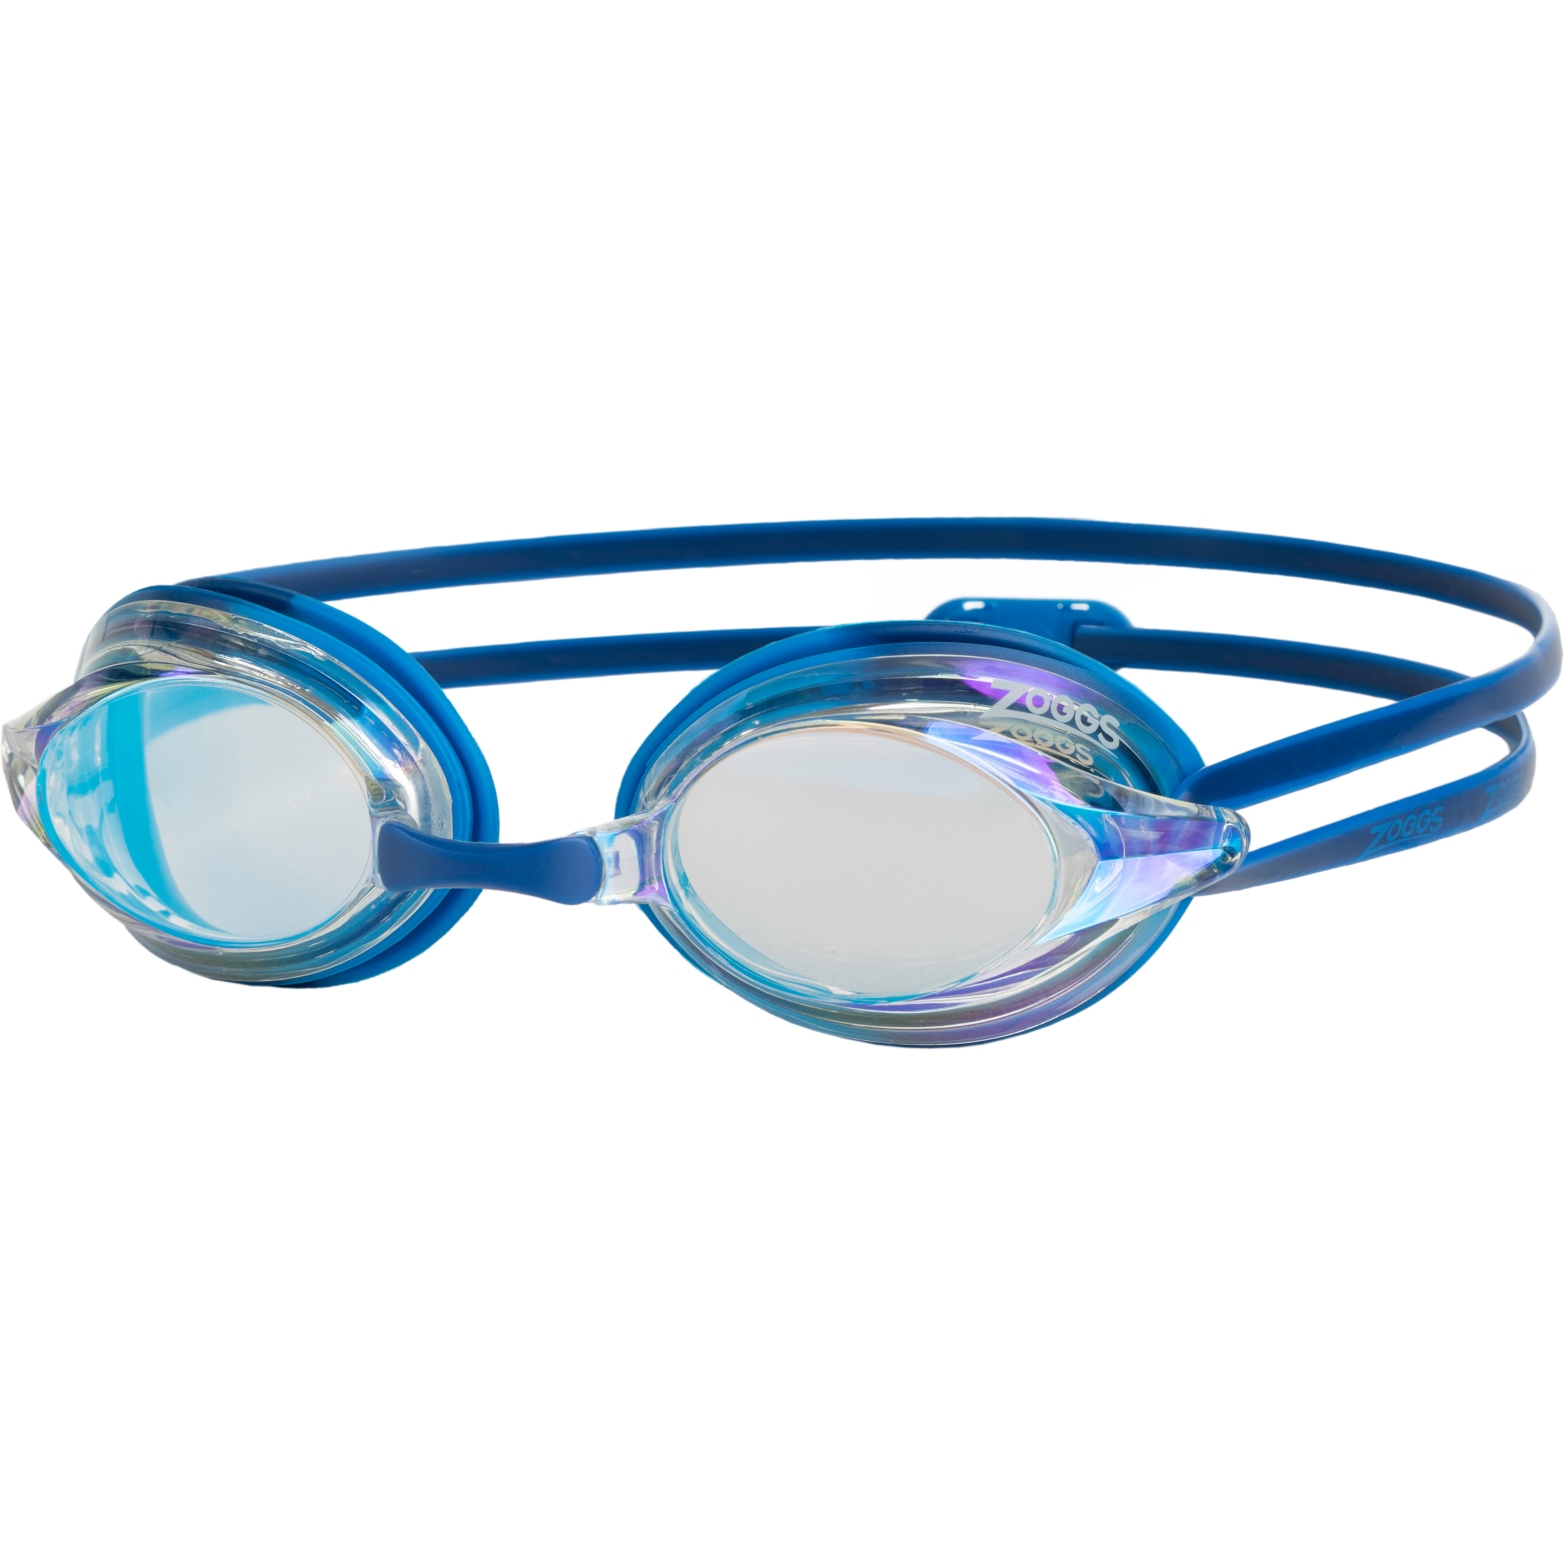 Produktbild von Zoggs Racer Titanium Schwimmbrille - Mirror Clear Lenses - Blue/Light Blue